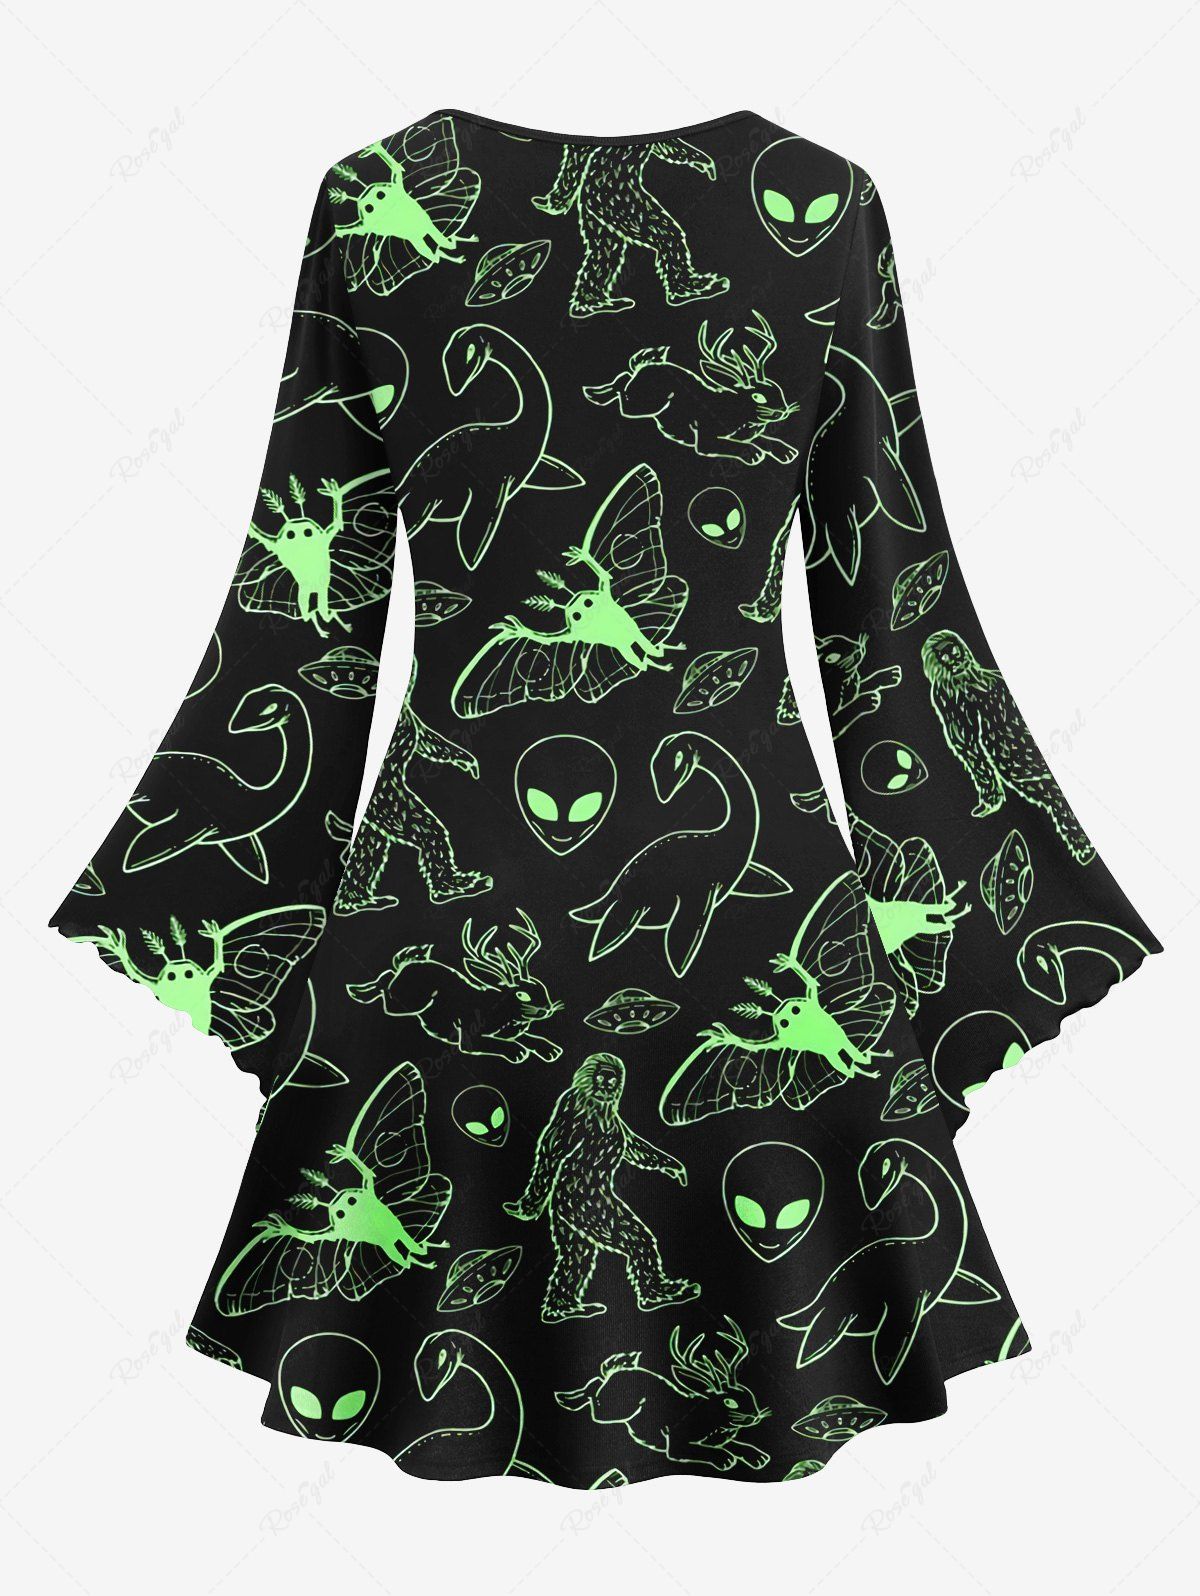 💗Lauren Loves💗 Gothic Alien UFO Rabbit Butterfly Monster Dinosaur Print Flare Sleeve A Line Dress